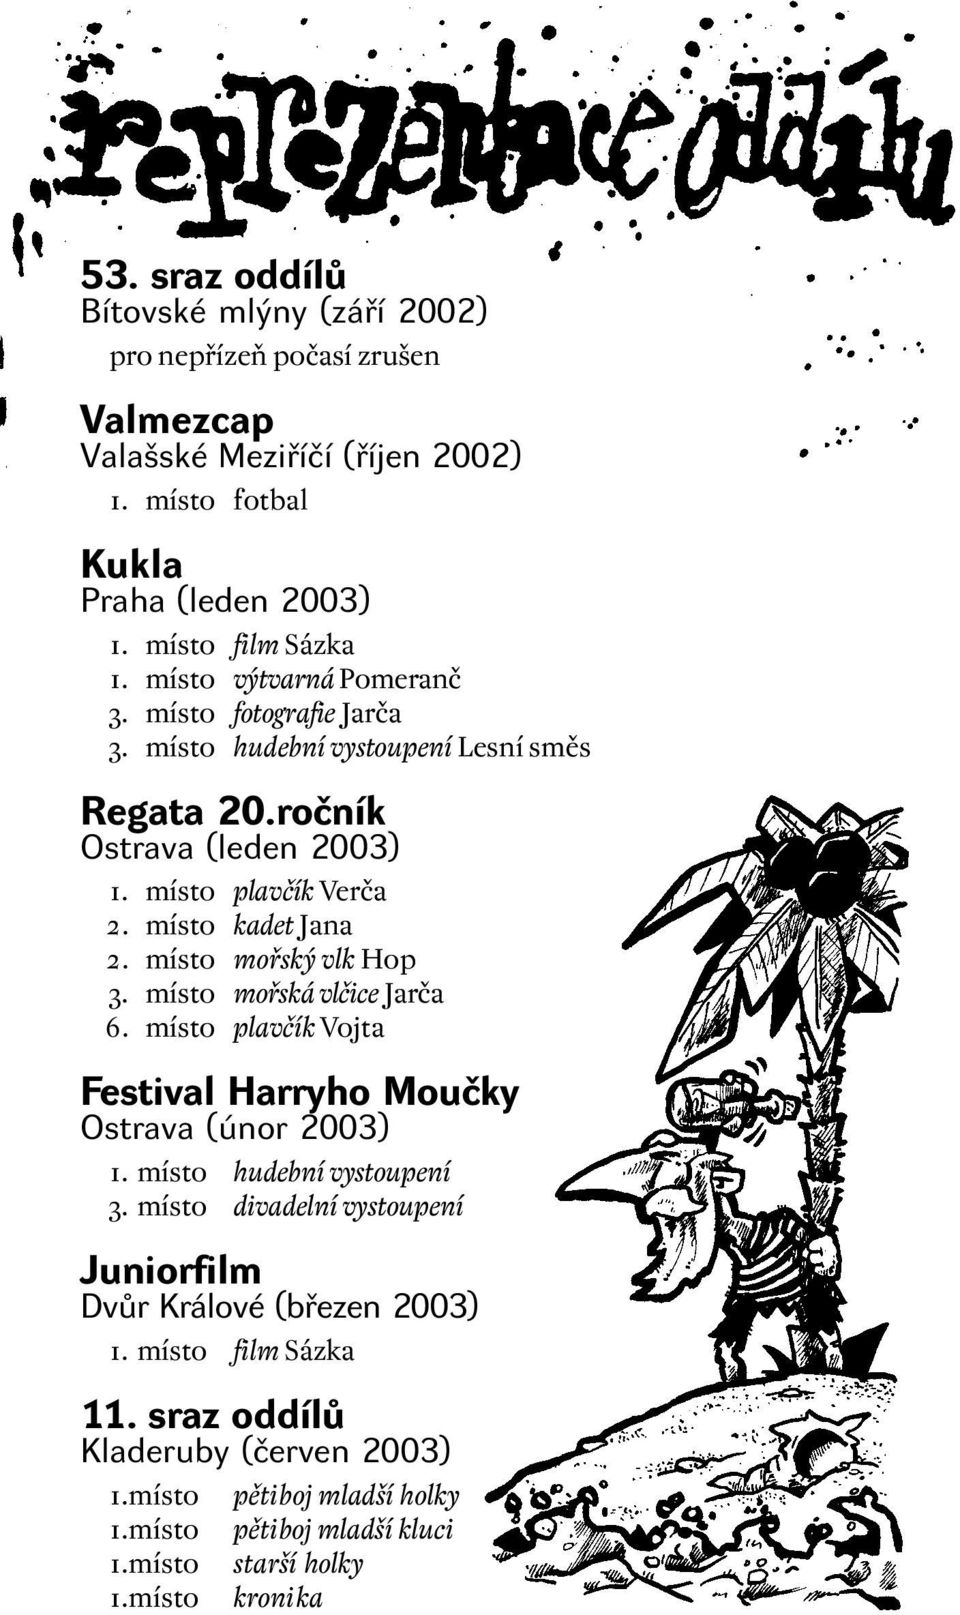 místo mořský vlk Hop 3. místo mořská vlčice Jarča 6. místo plavčík Vojta Festival Harryho Moučky Ostrava (únor 2003) 1. místo hudební vystoupení 3.